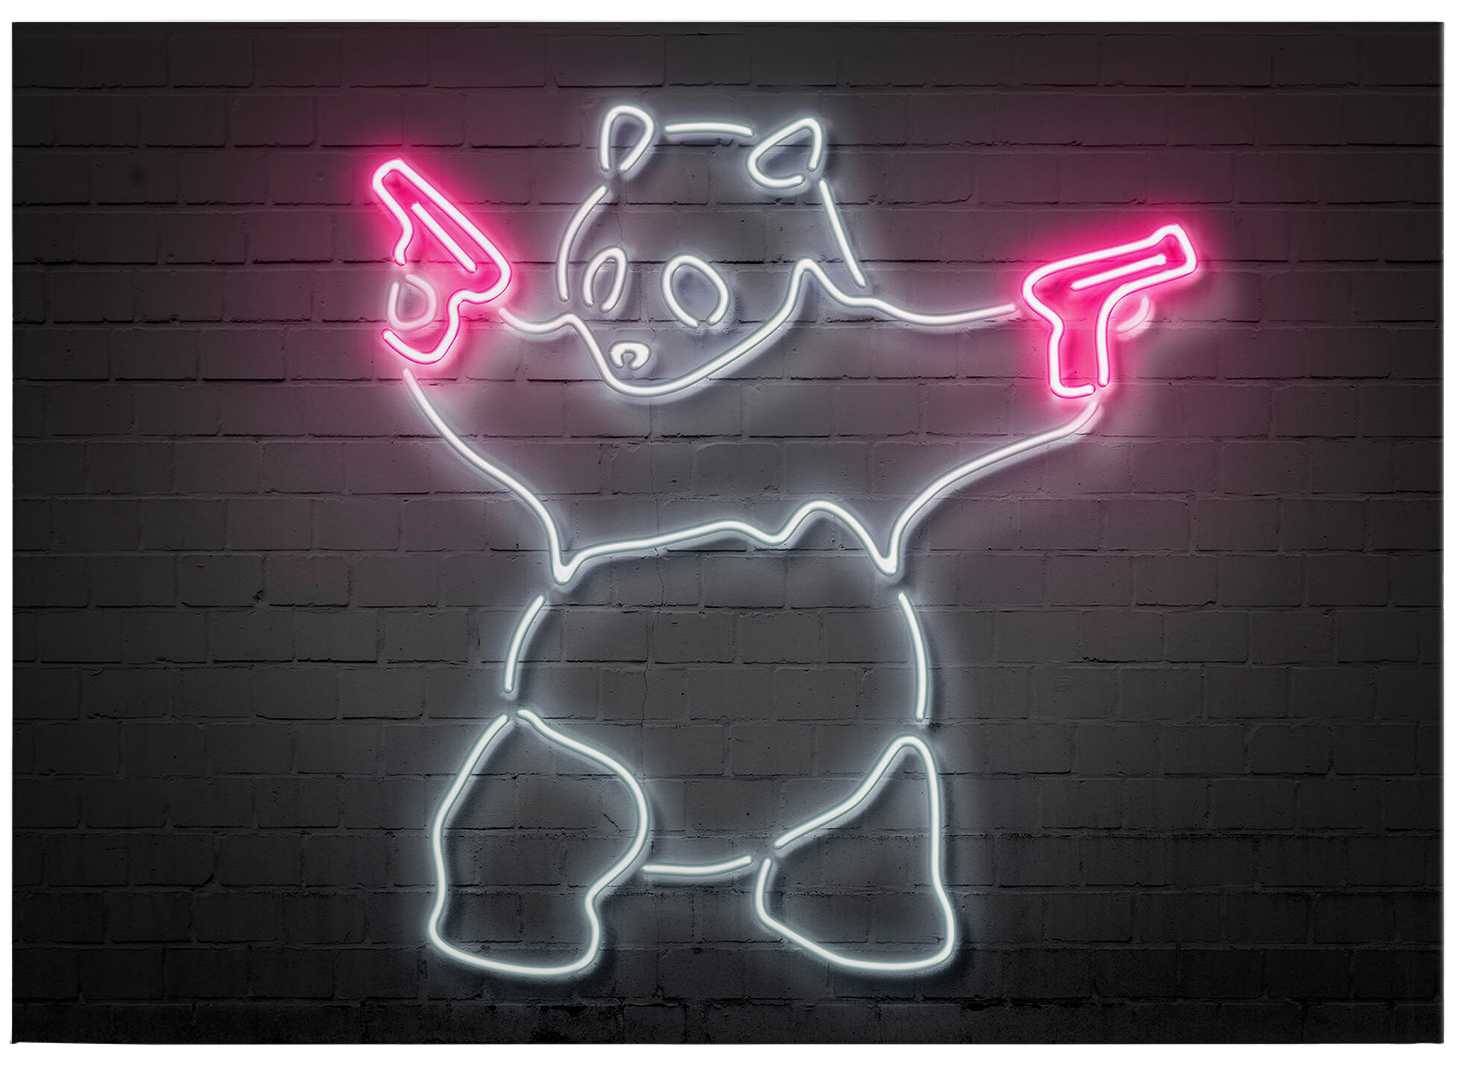             Panneau néon "Panda" de Mielu - 0,70 m x 0,50 m
        